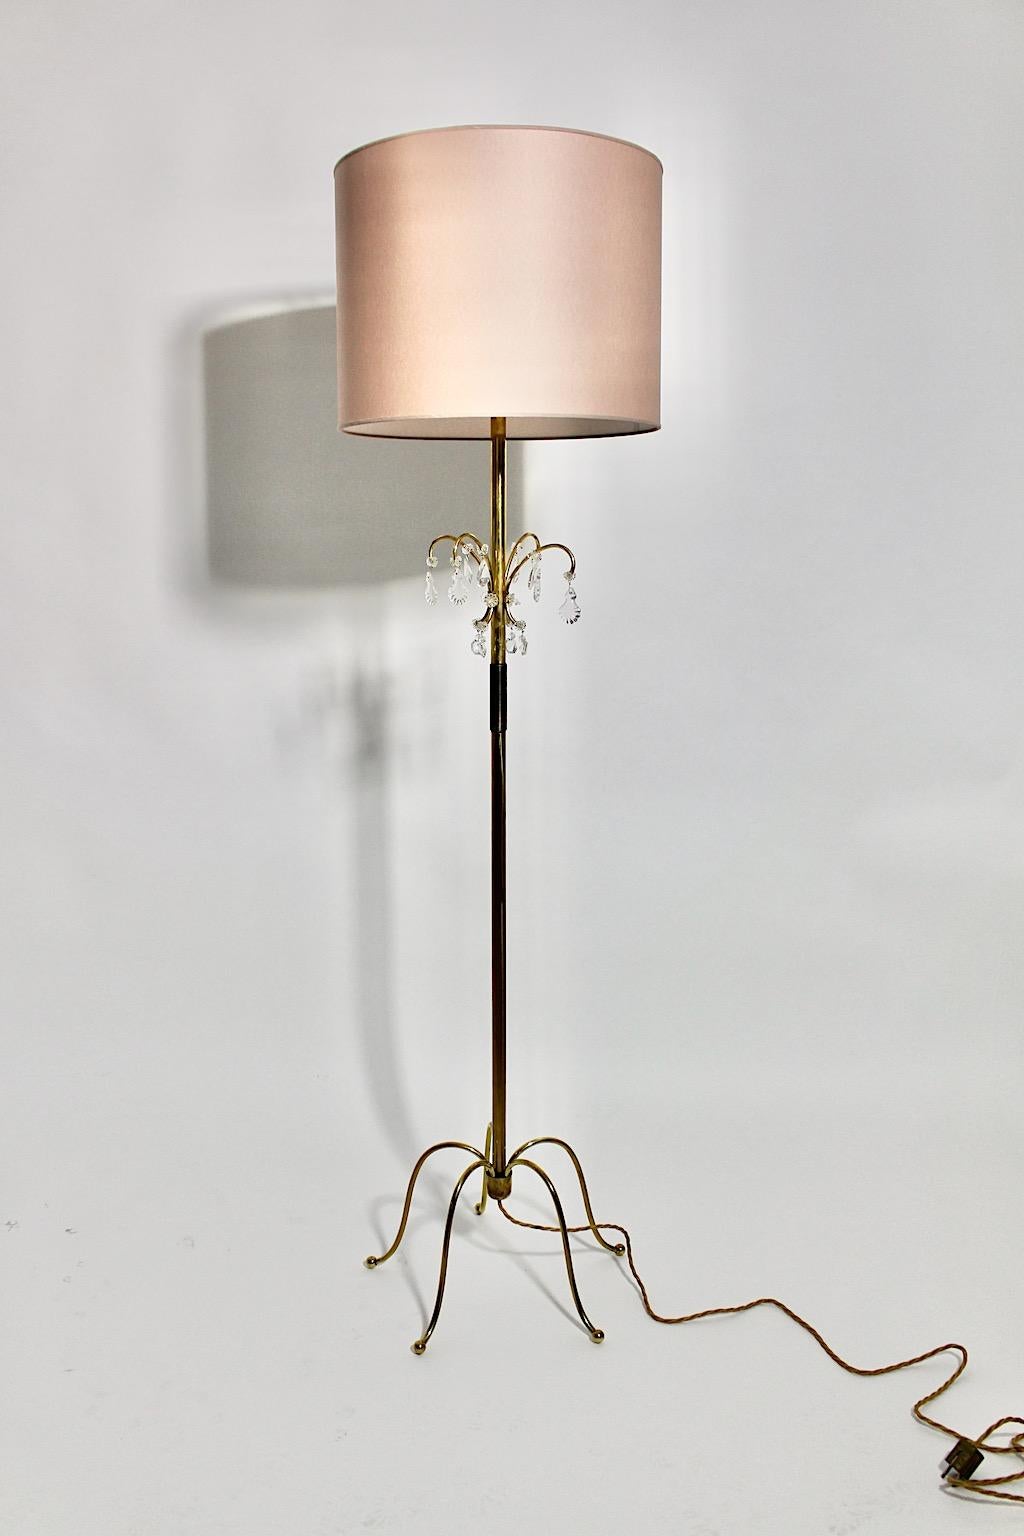 Un lampadaire vintage en laiton et cristal de style Mid-Century Modern, qui a été conçu et exécuté par J.&L. Lobmeyr, 1950, Vienne.
Le beau et délicat lampadaire en laiton avec des éléments en verre de cristal taillé montre un abat-jour en papier